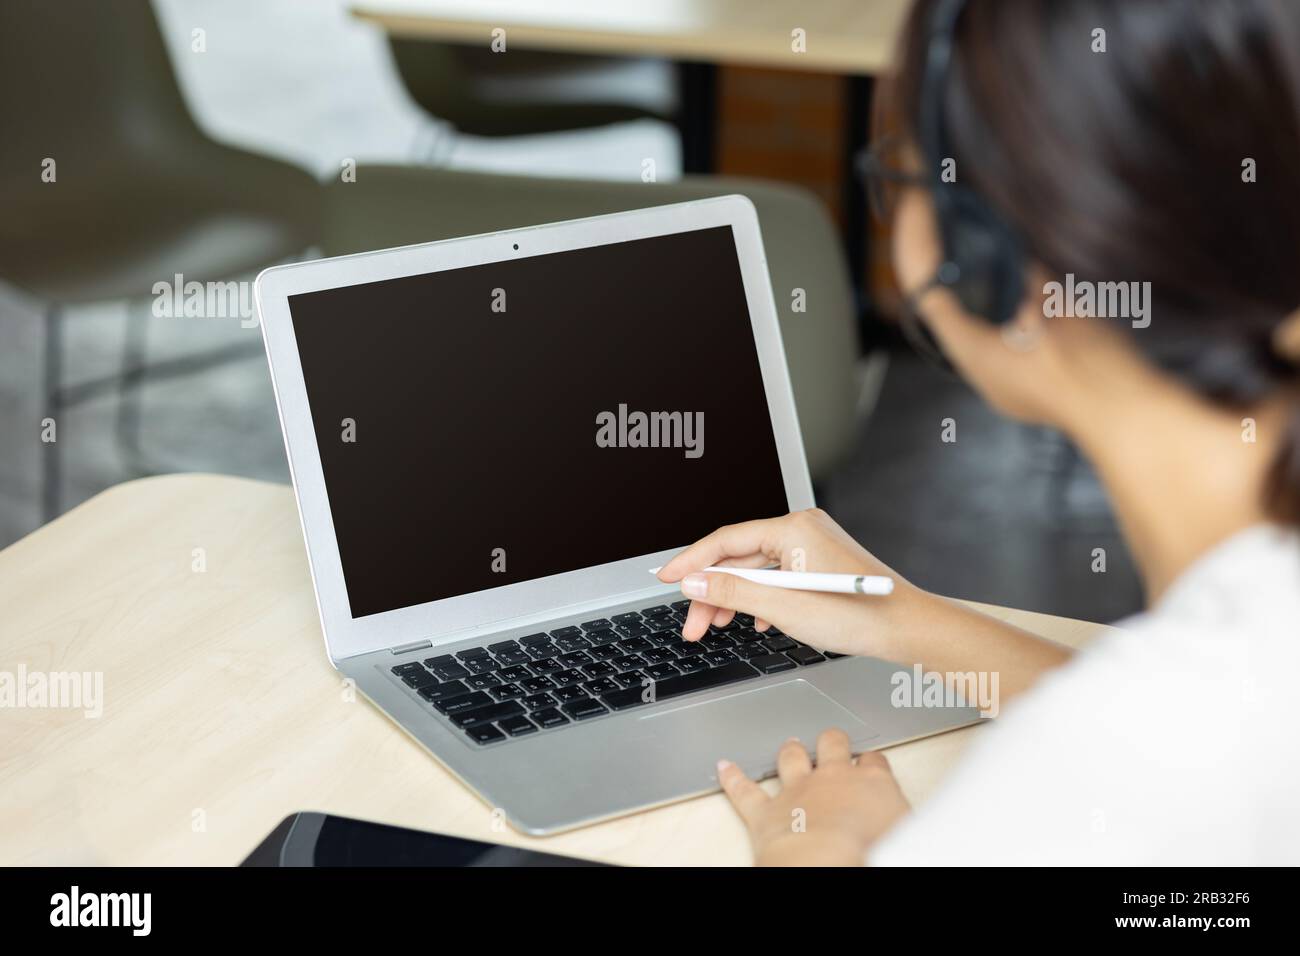 Persone che lavorano su un computer portatile con uno schermo vuoto per la creazione di immagini di testo pubblicitarie sovrapposte sulla scrivania dell'ufficio, vista posteriore di una donna d'affari che usa le mani occupate Foto Stock